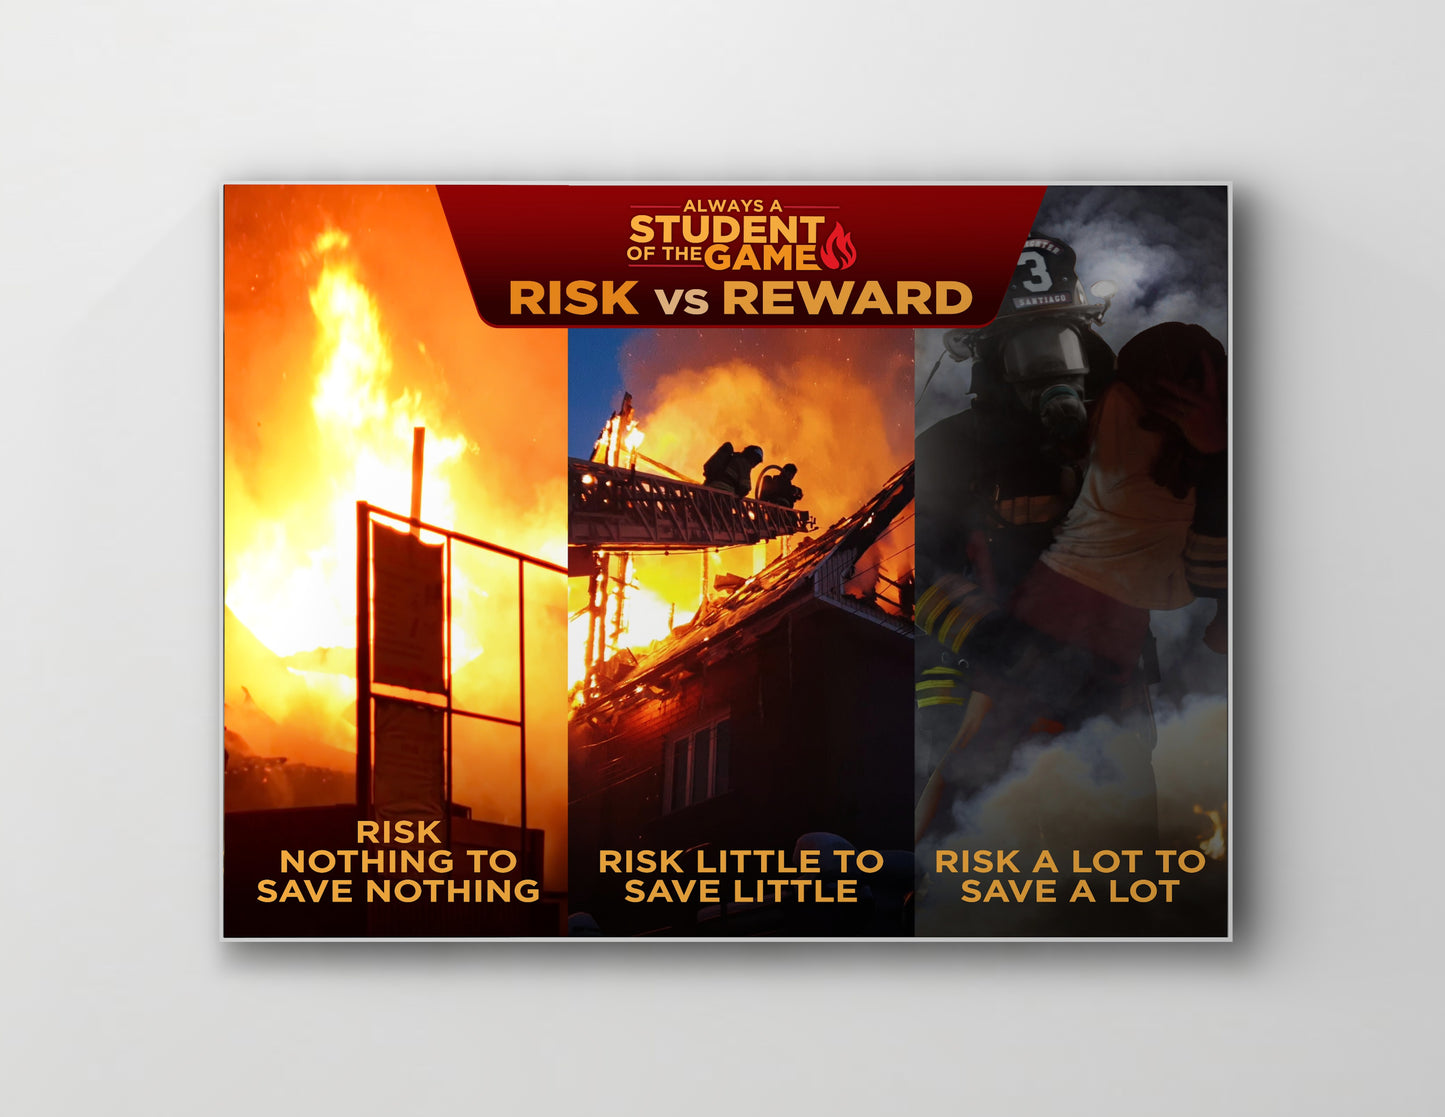 Risk vs. Reward